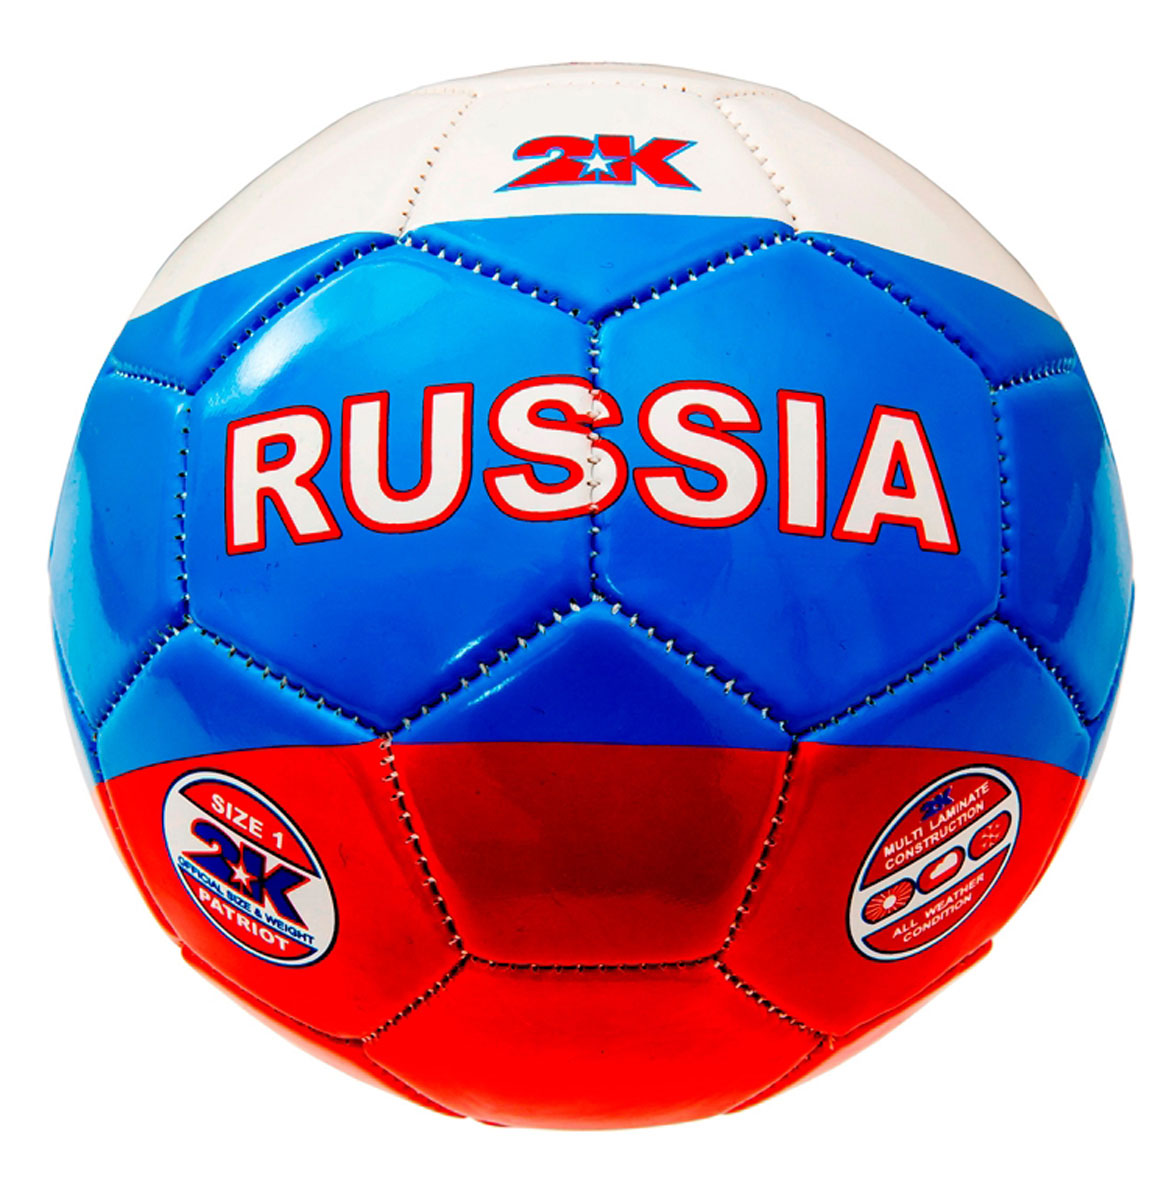 Изображение футбольного мяча